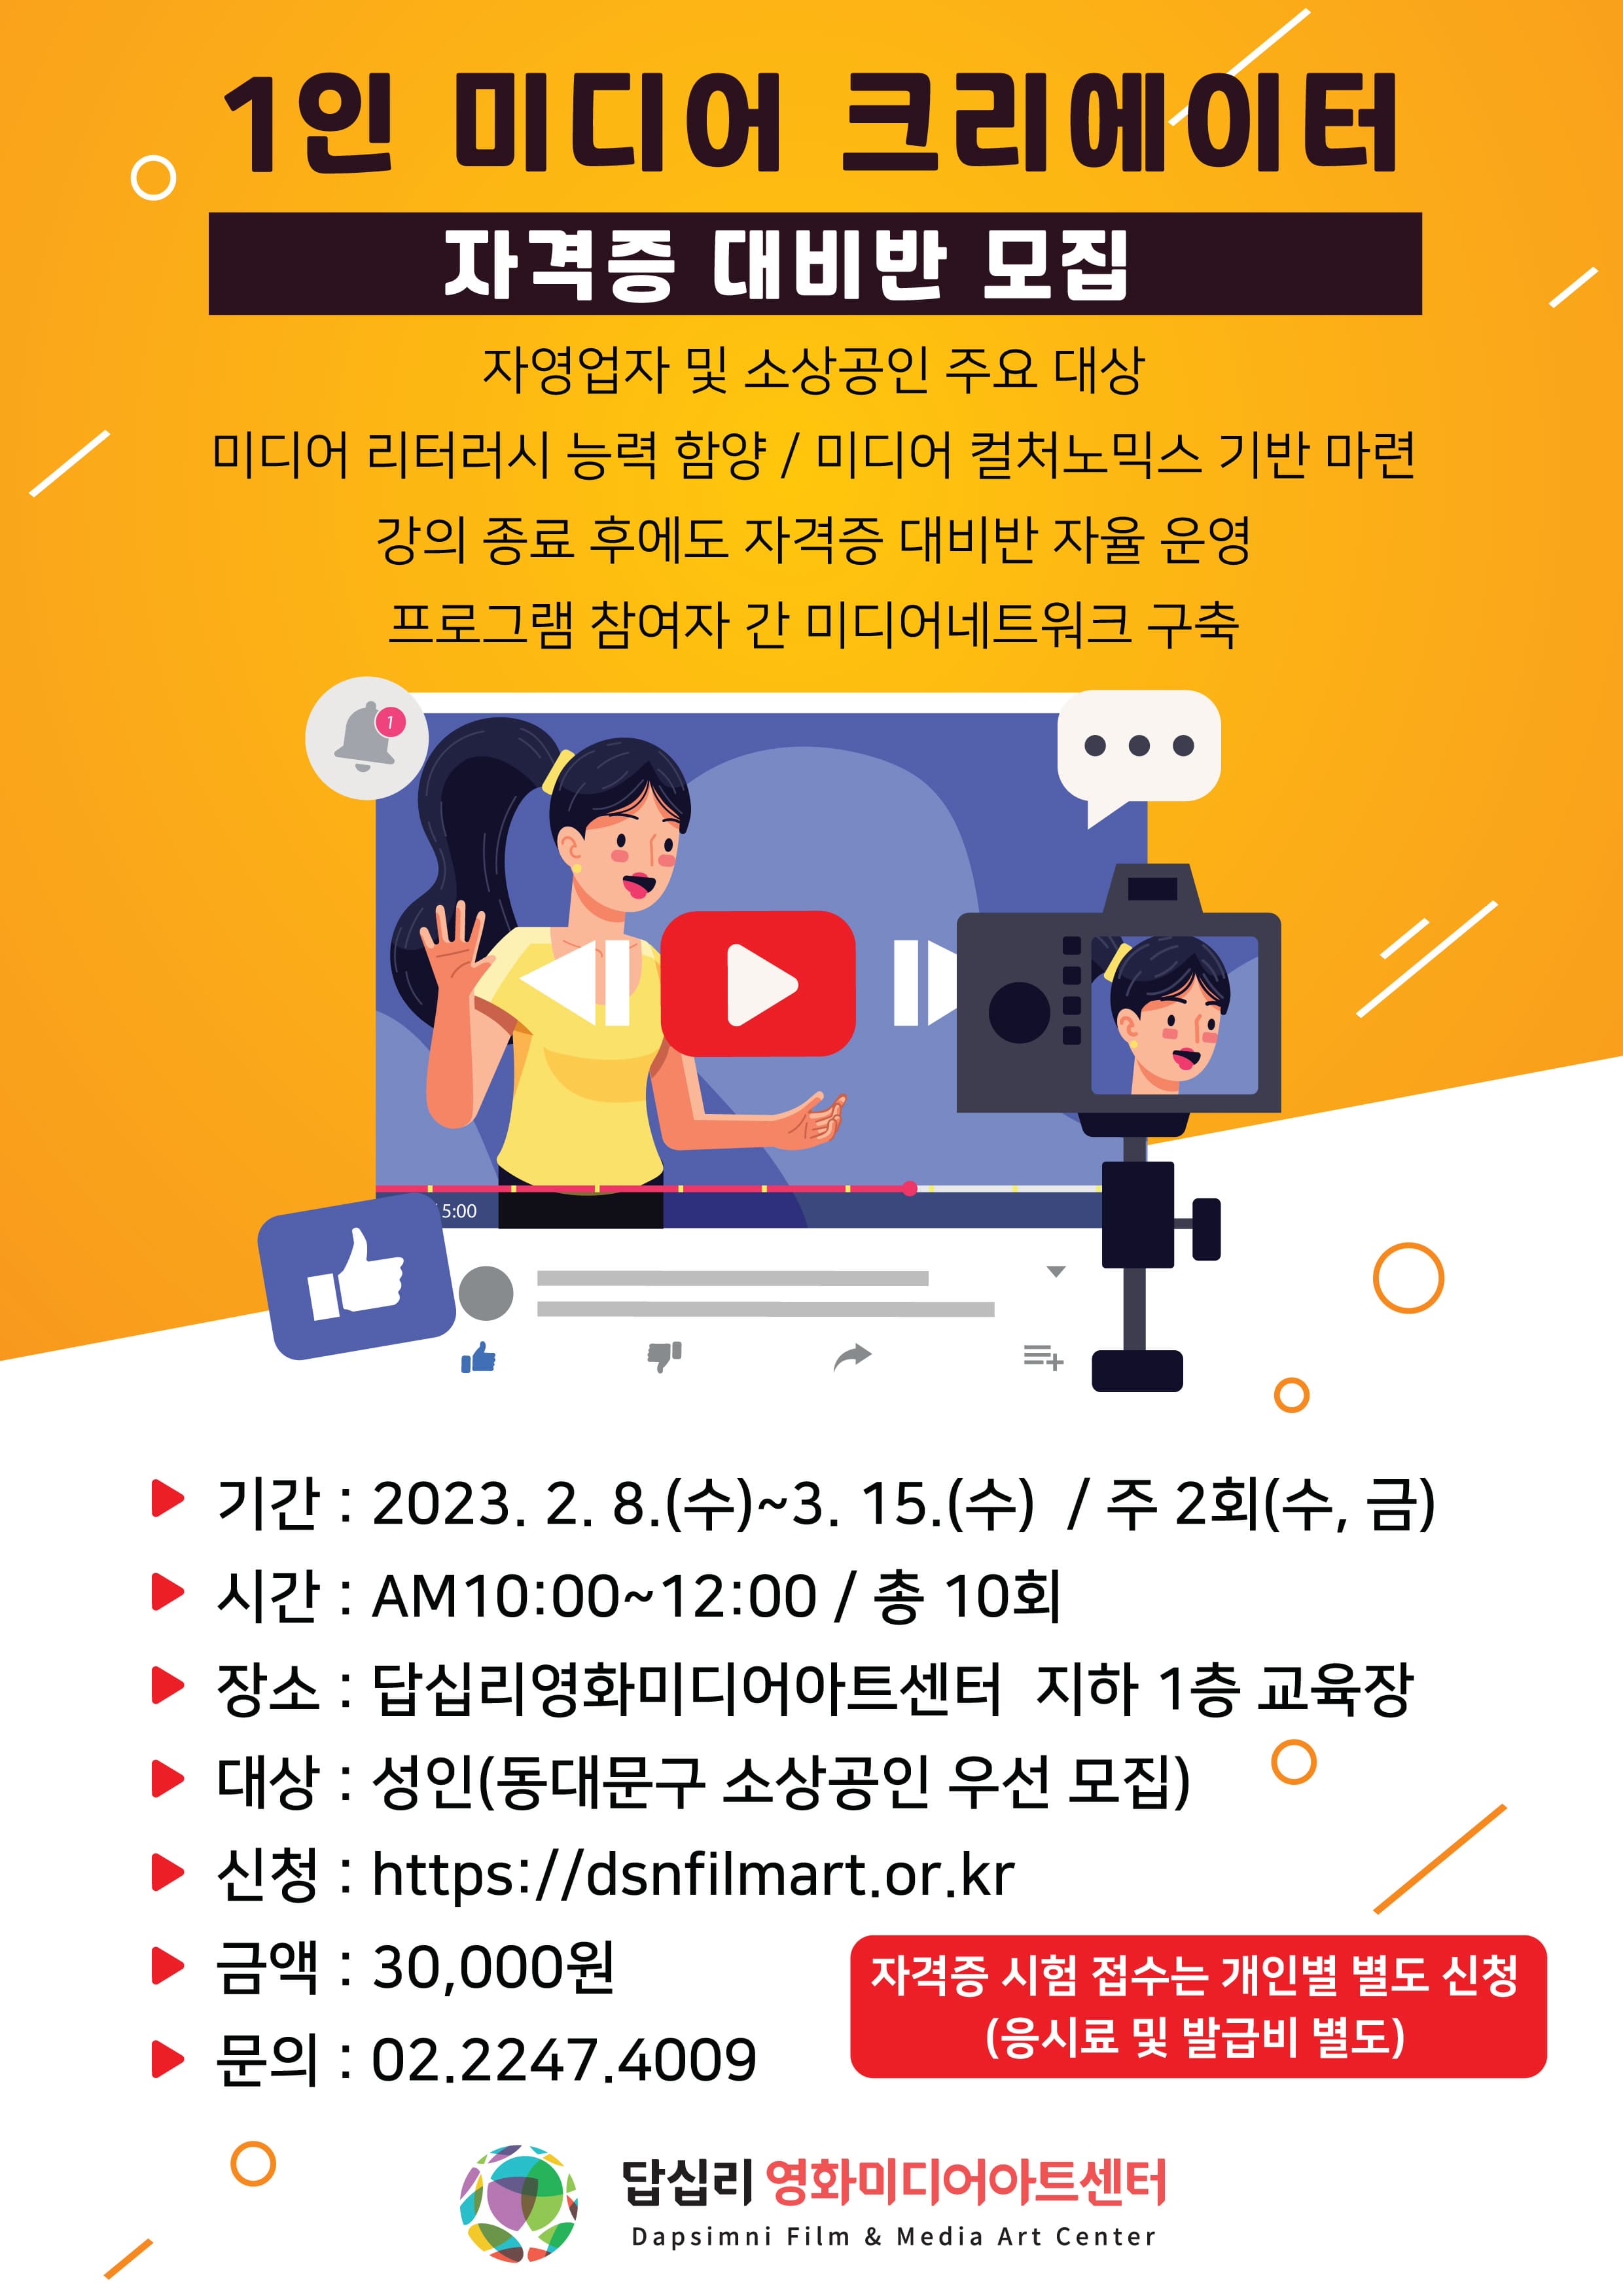 [서울] 1인 미디어 크리에이터 자격증 대비반